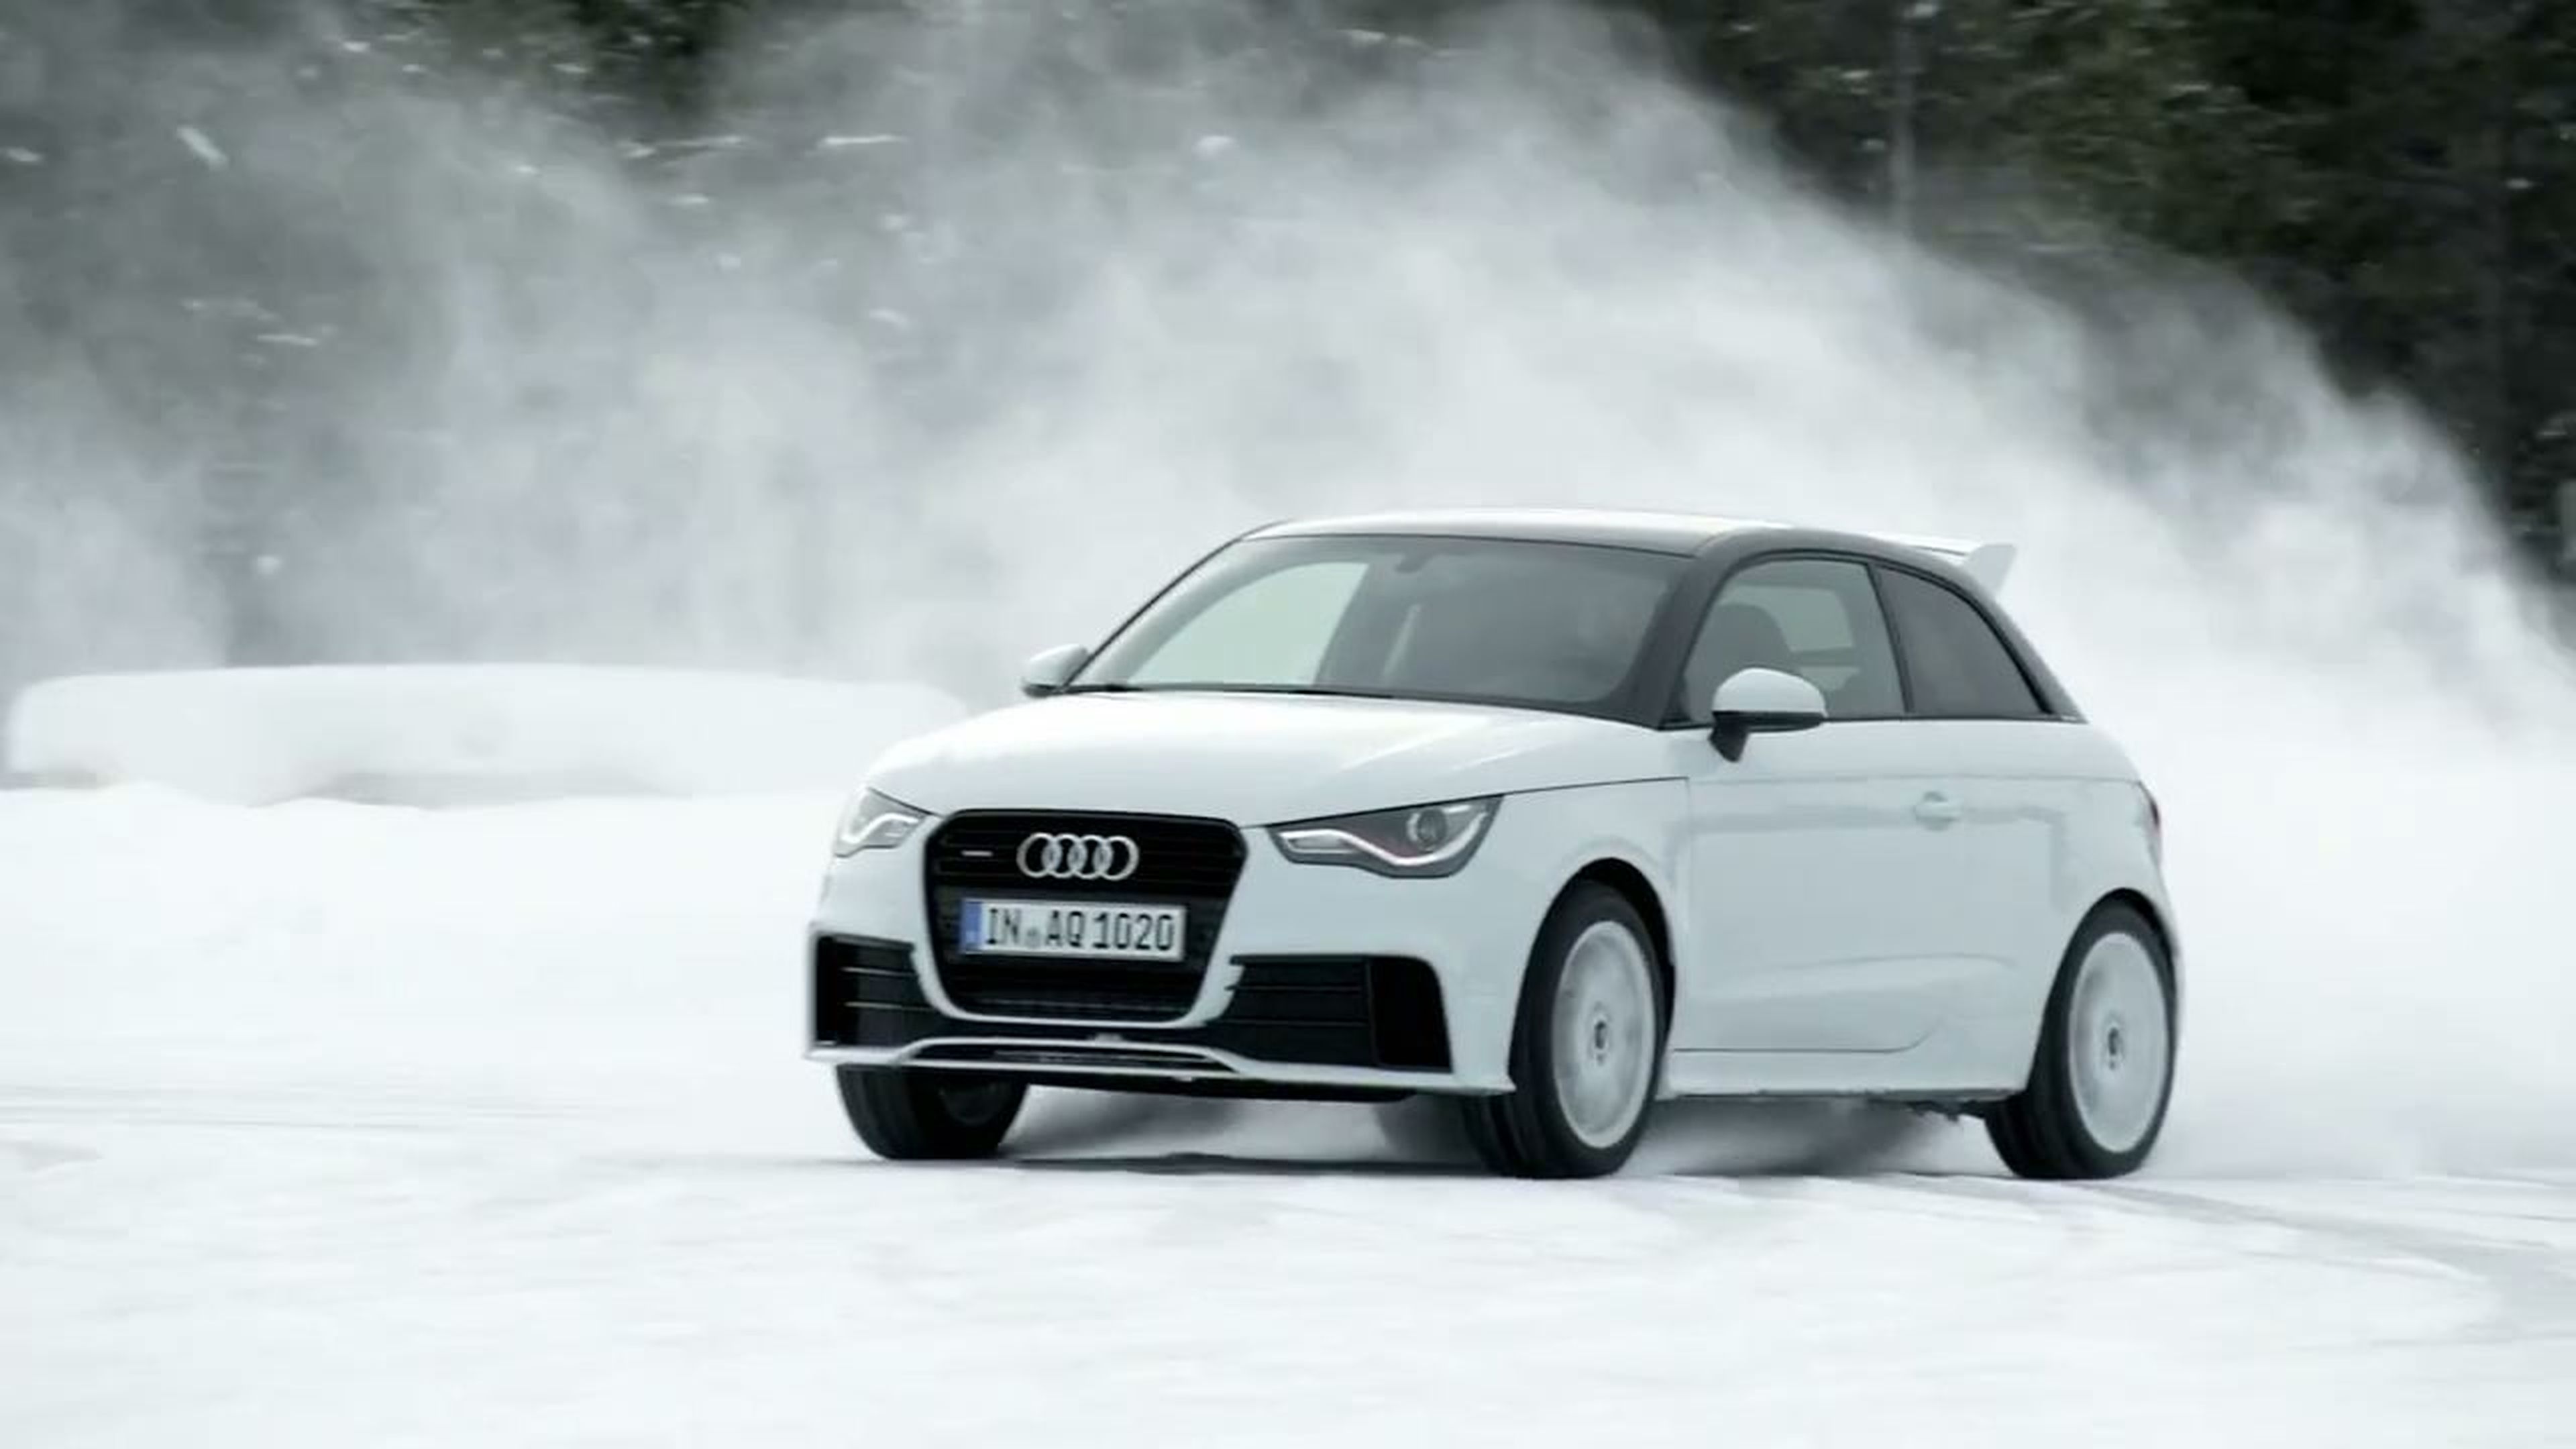 Audi A1 quattro: prueba en hielo